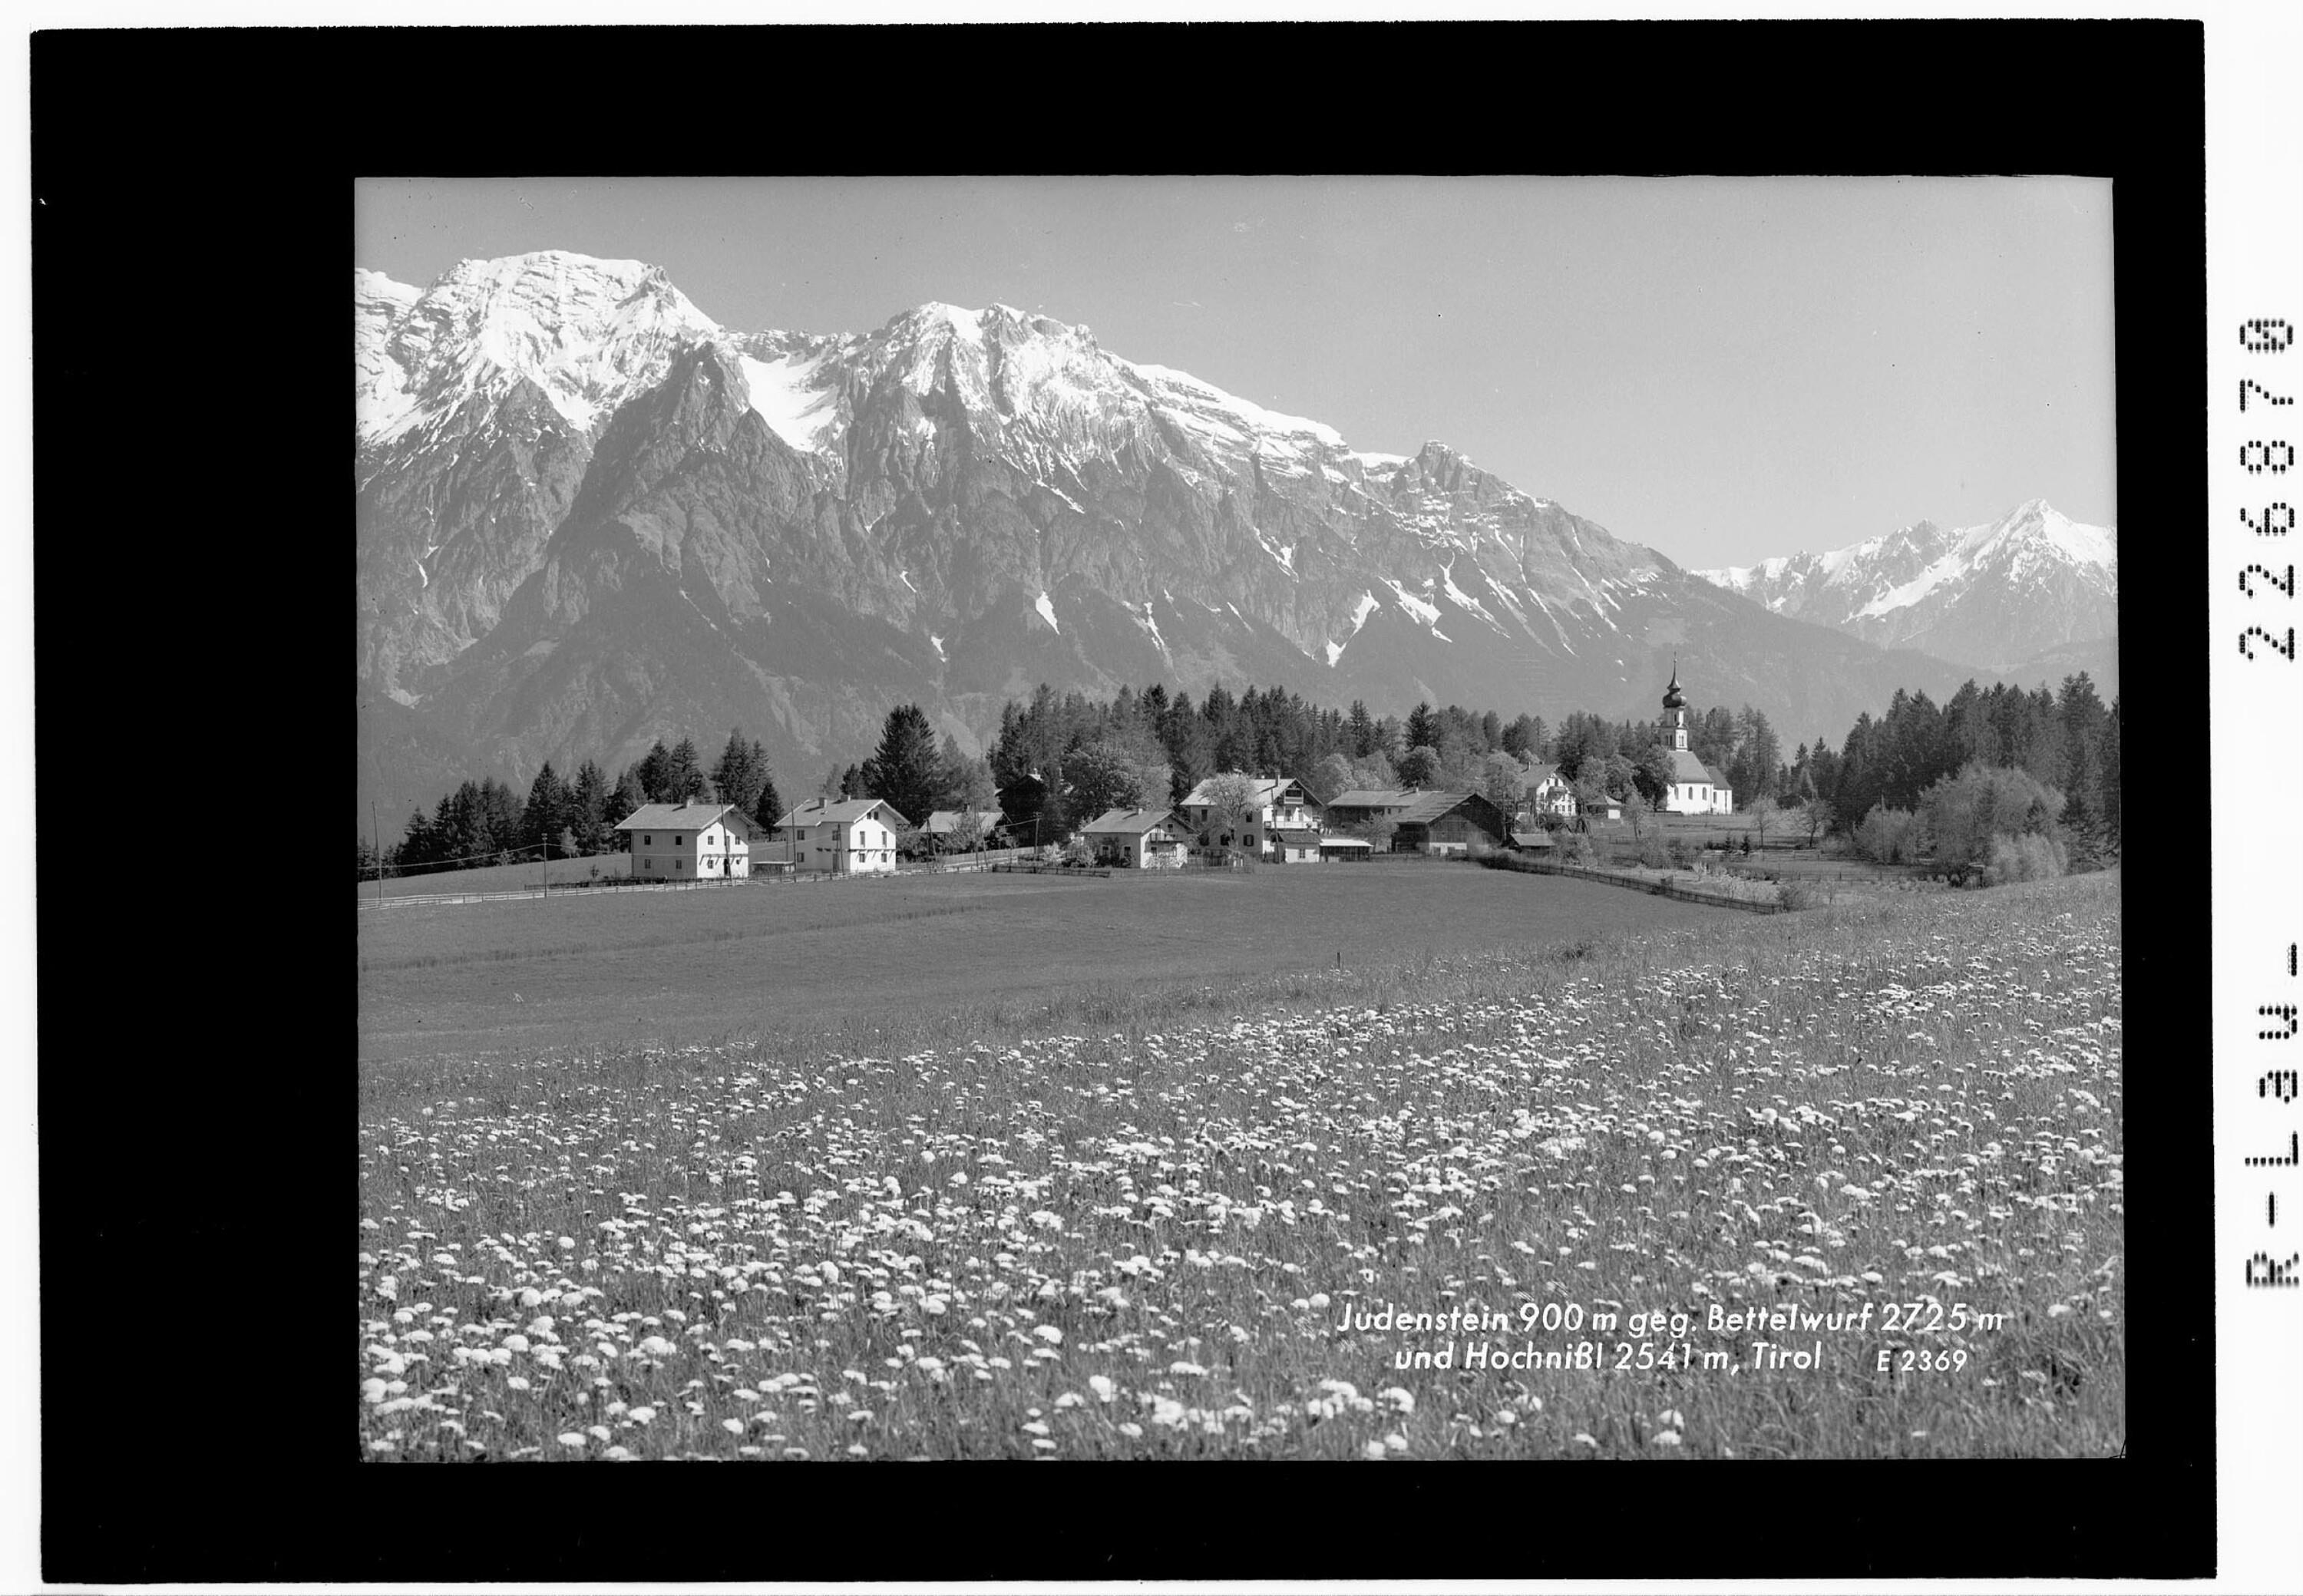 Judenstein 900 m gegen Bettelwurf 2725 m und Hochnißl 2541 m Tirol></div>


    <hr>
    <div class=